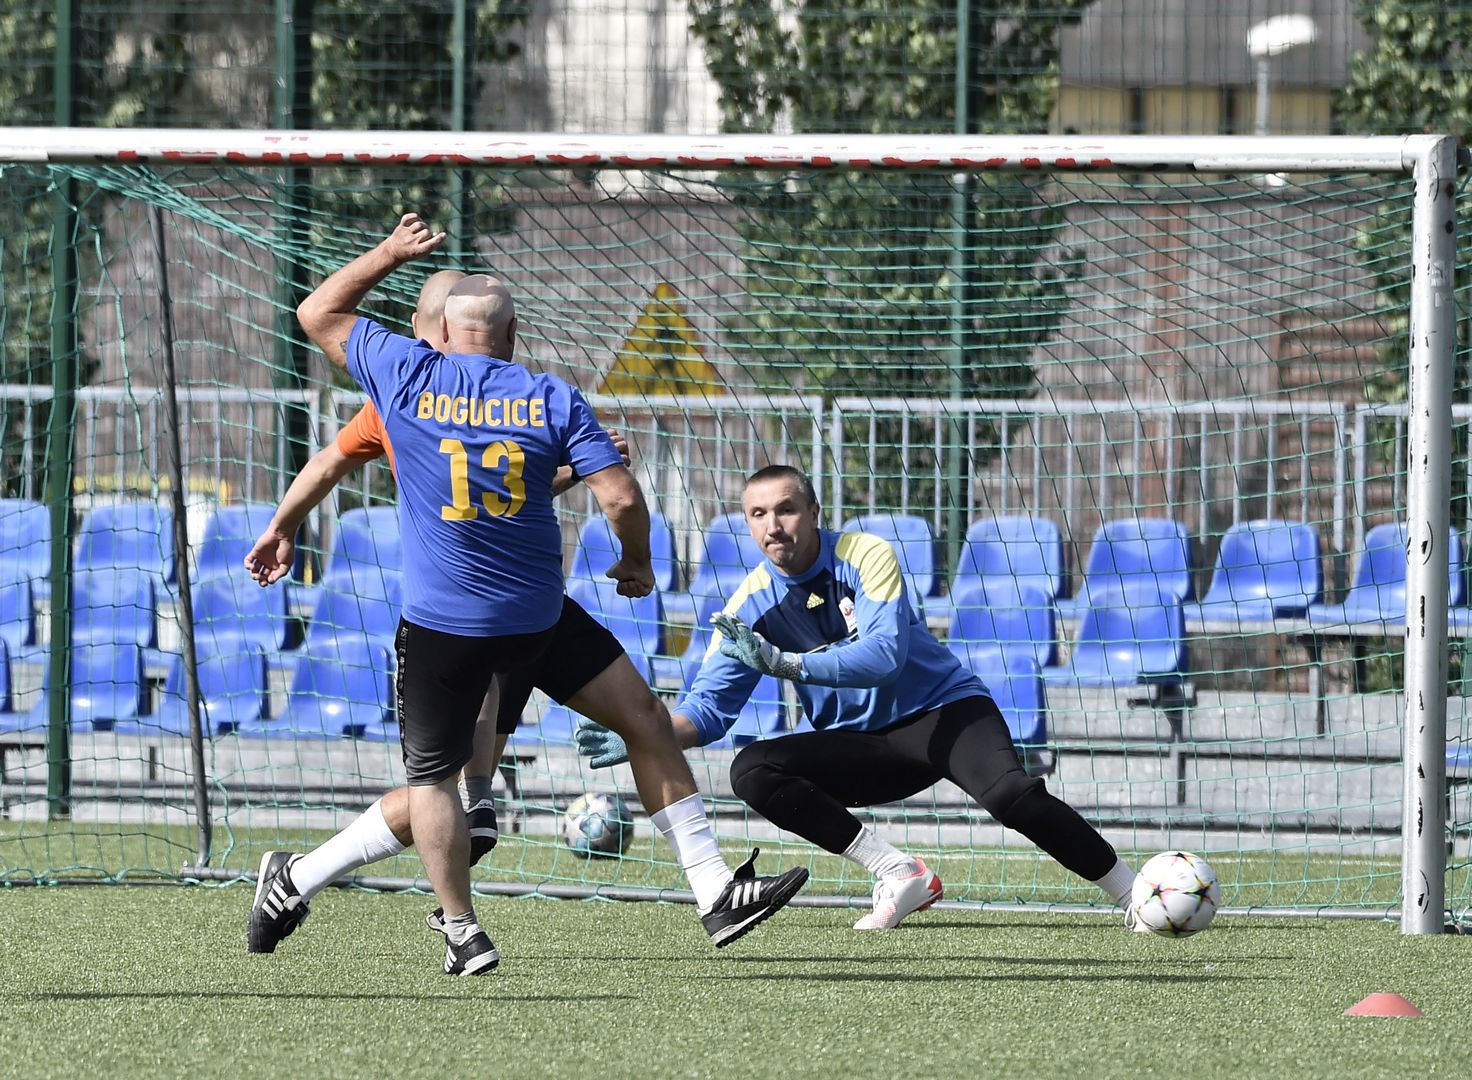 Piłkarze na boisku Rapid w Katowicach